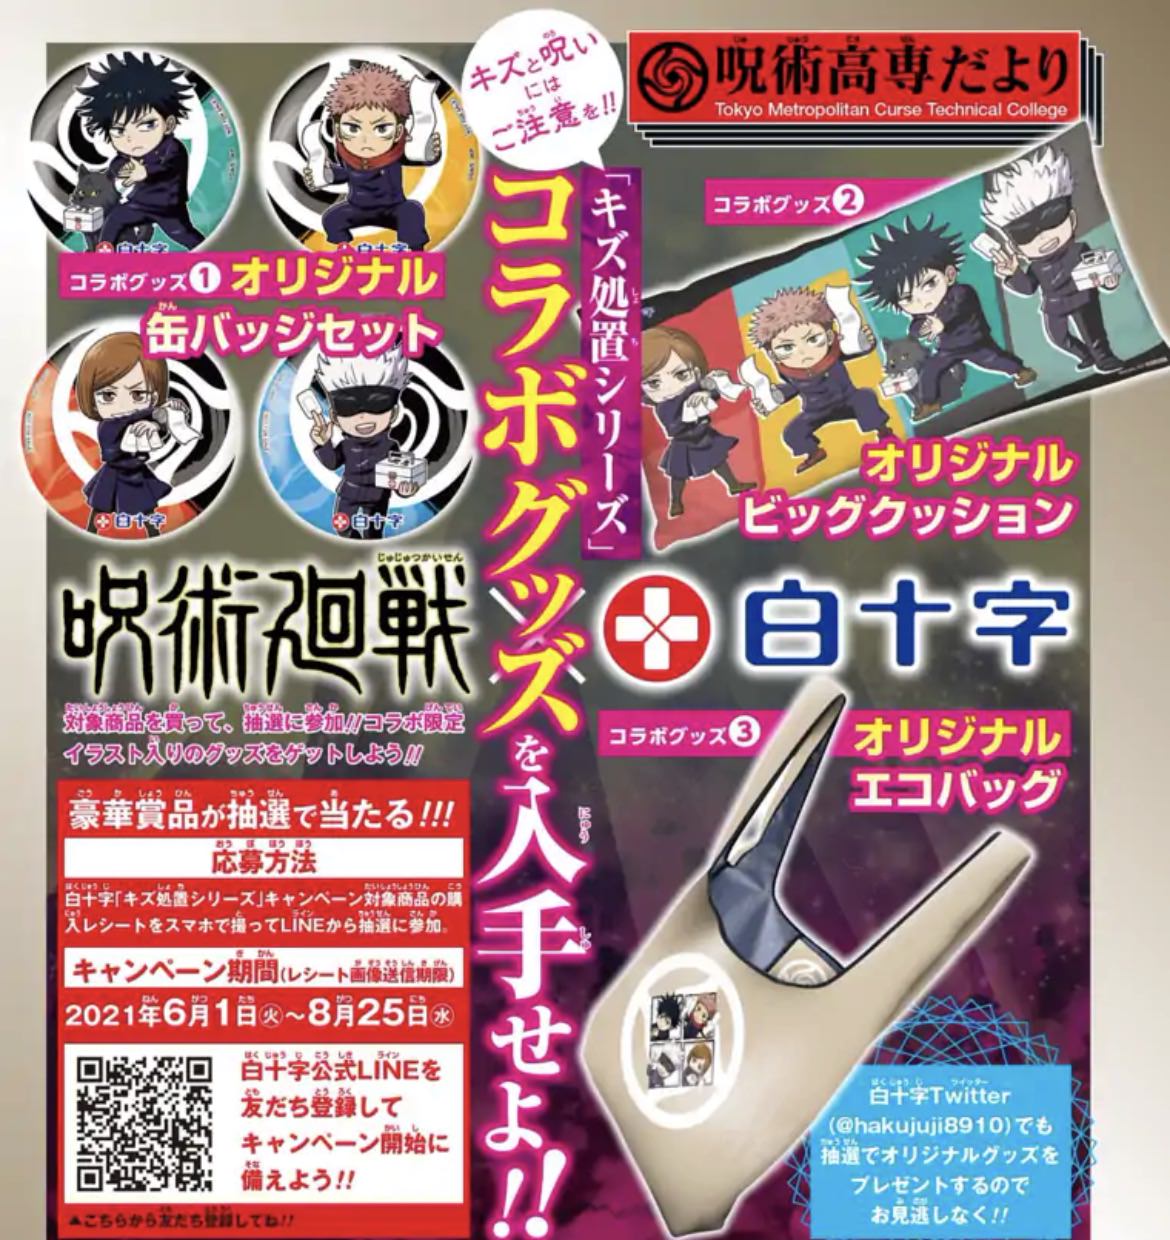 呪術廻戦 × 白十字「キズ処置シリーズ」6月1日よりコラボ開催!